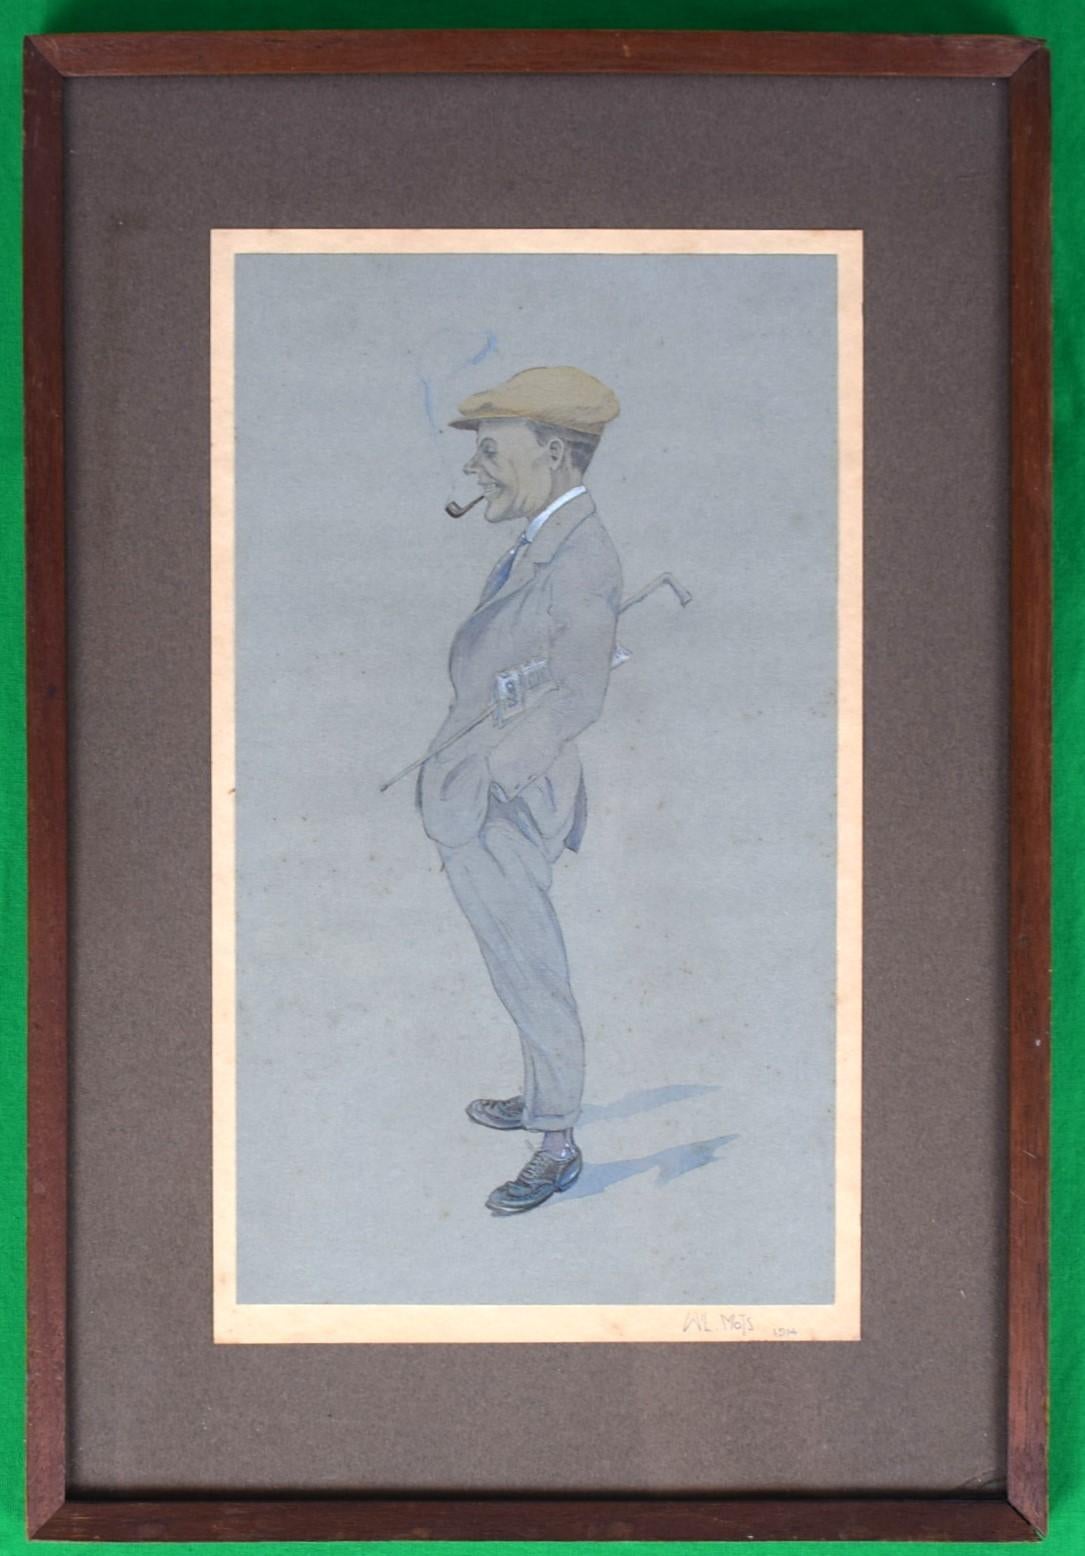 Charmantes Aquarell, das einen verwegenen Herrn mit Pfeife/ Mütze/ & Stock darstellt, von W L. Mots 1914

Art Sz: 11 1/4 "H x 6 5/8 "W

Rahmengröße: 15 3/4 "H x 10 1/2 "W